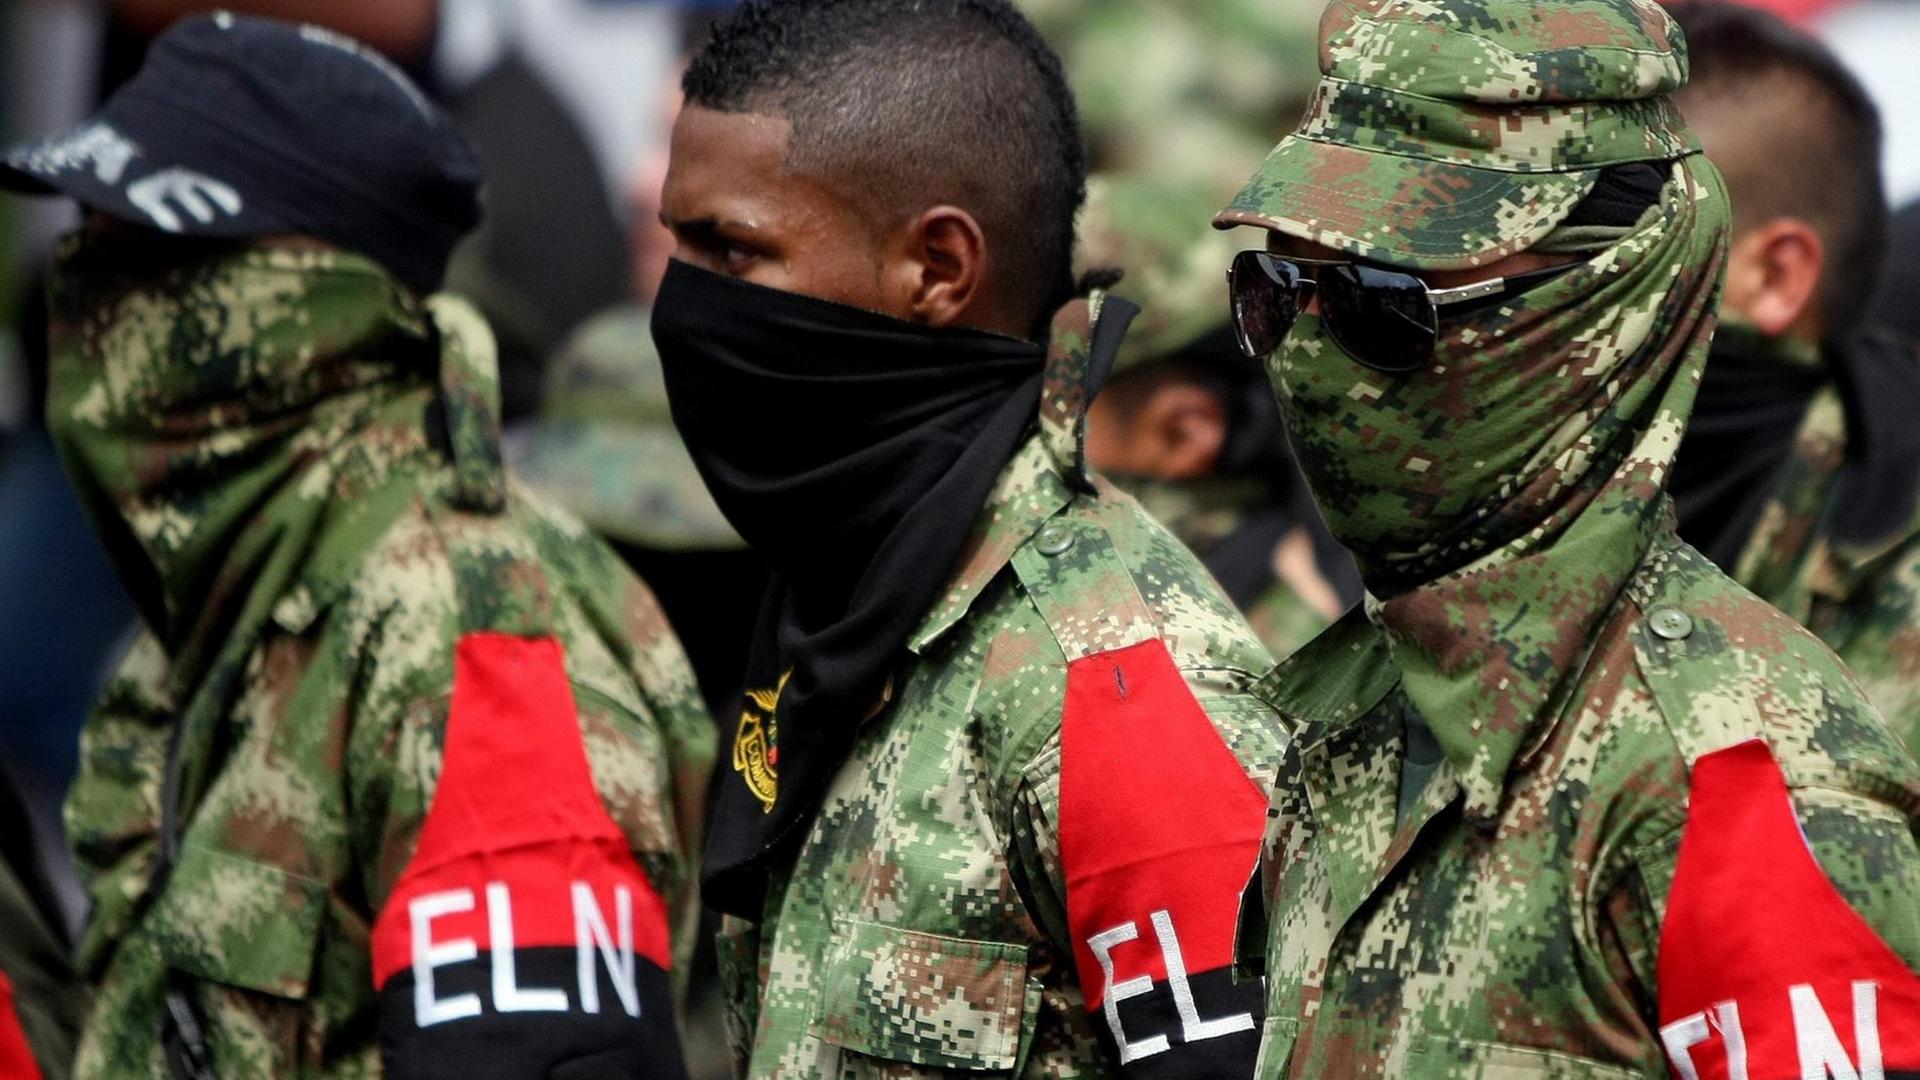 Kämpfer der ELN-Guerilla; sie tragen Tarnanzüge und sind vermummt.